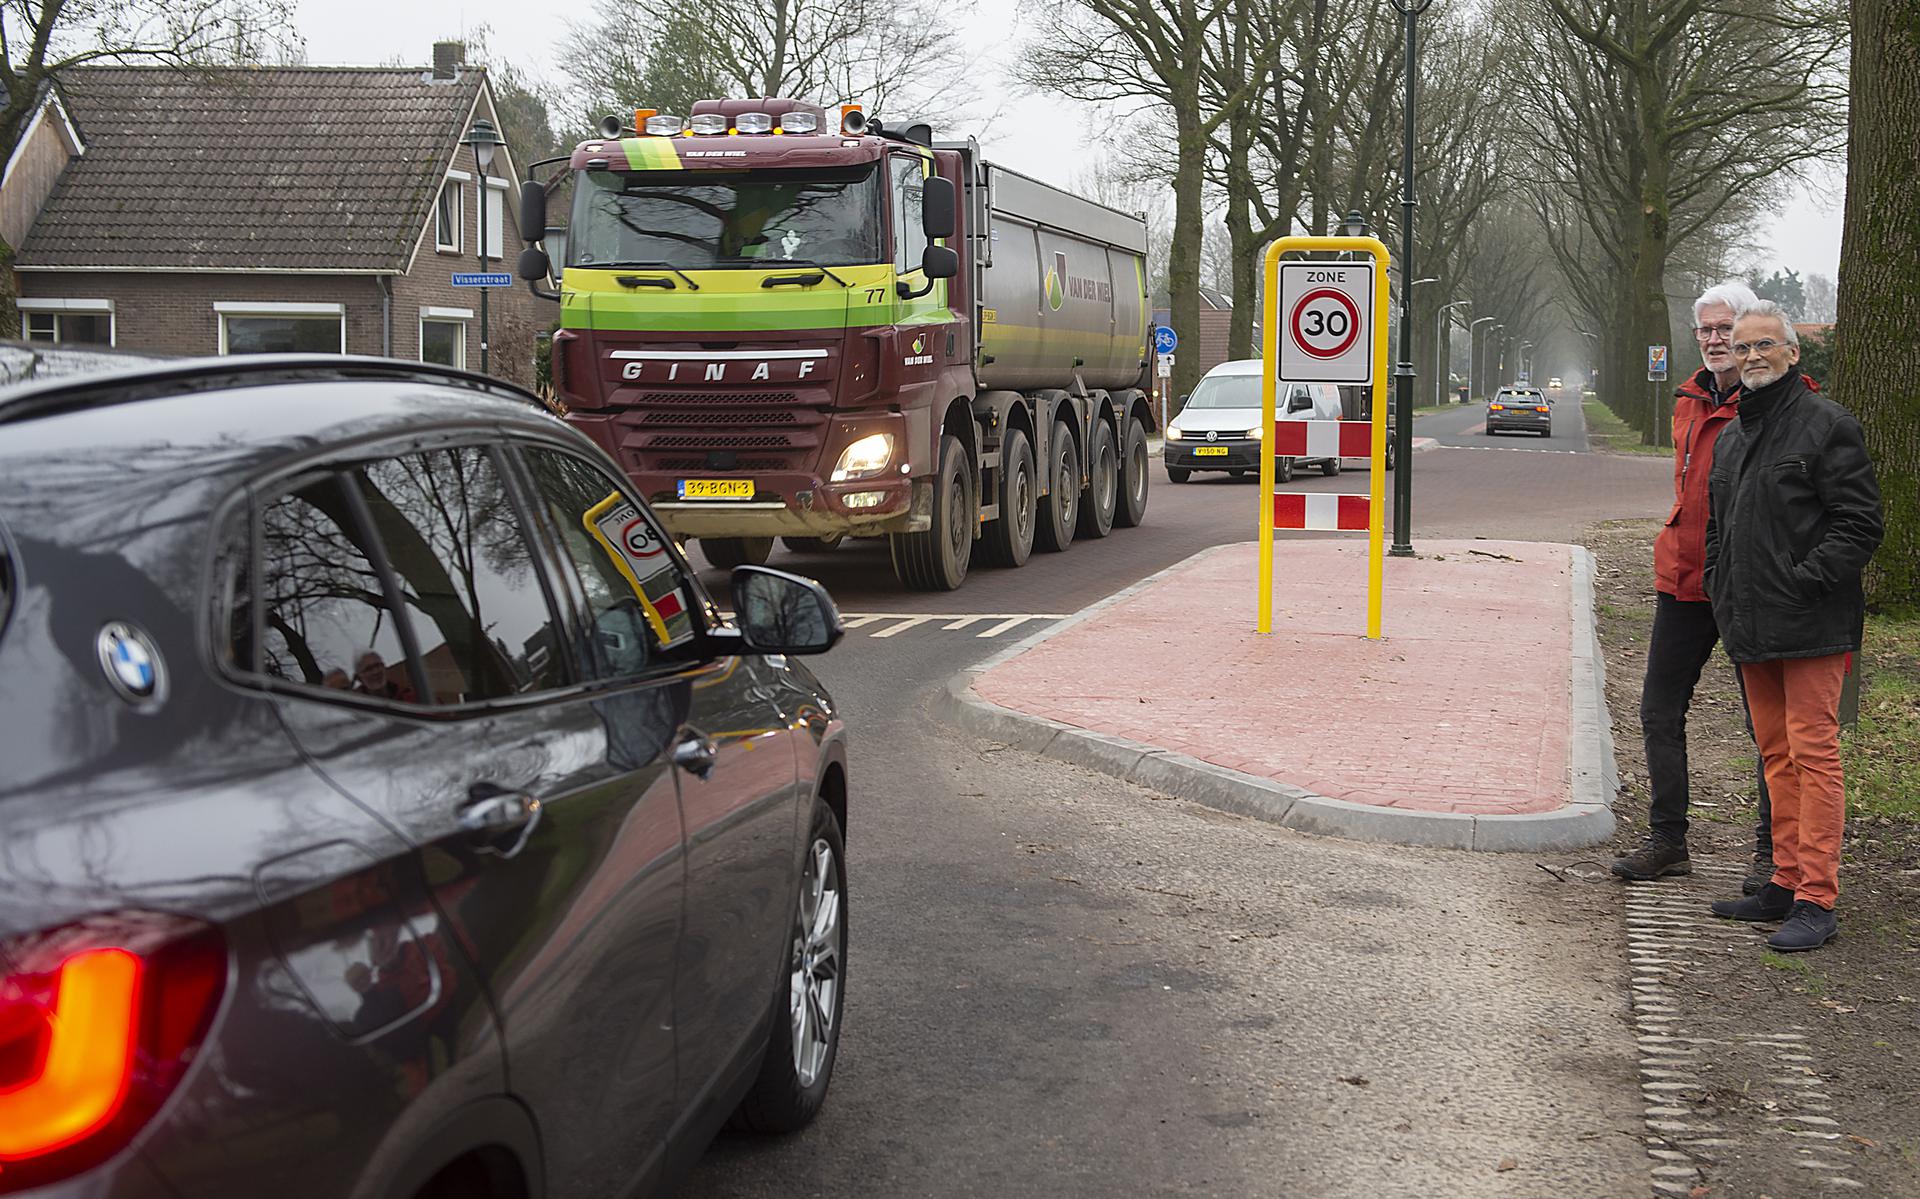 Vrachtwagens wurmen zich door Klijndijk. Volgens de inwoners levert dit overlast en gevaarlijke situaties op.